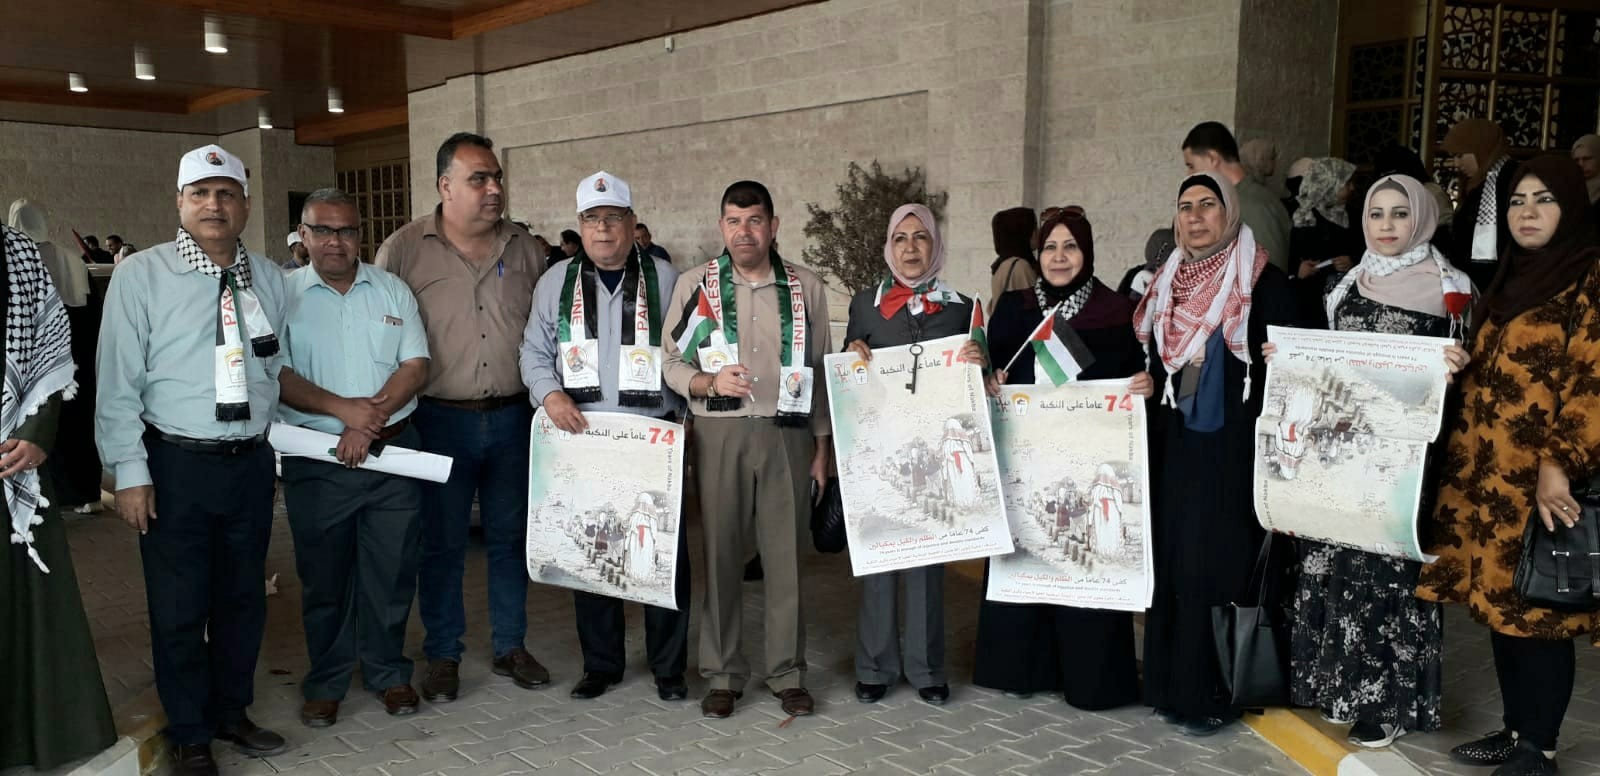 التجمع الفلسطيني للوطن و الشتات يشارك في فعاليات ذكرى النكبة ال74 في جامعة الأزهر بمدينة غزة  2.jpg